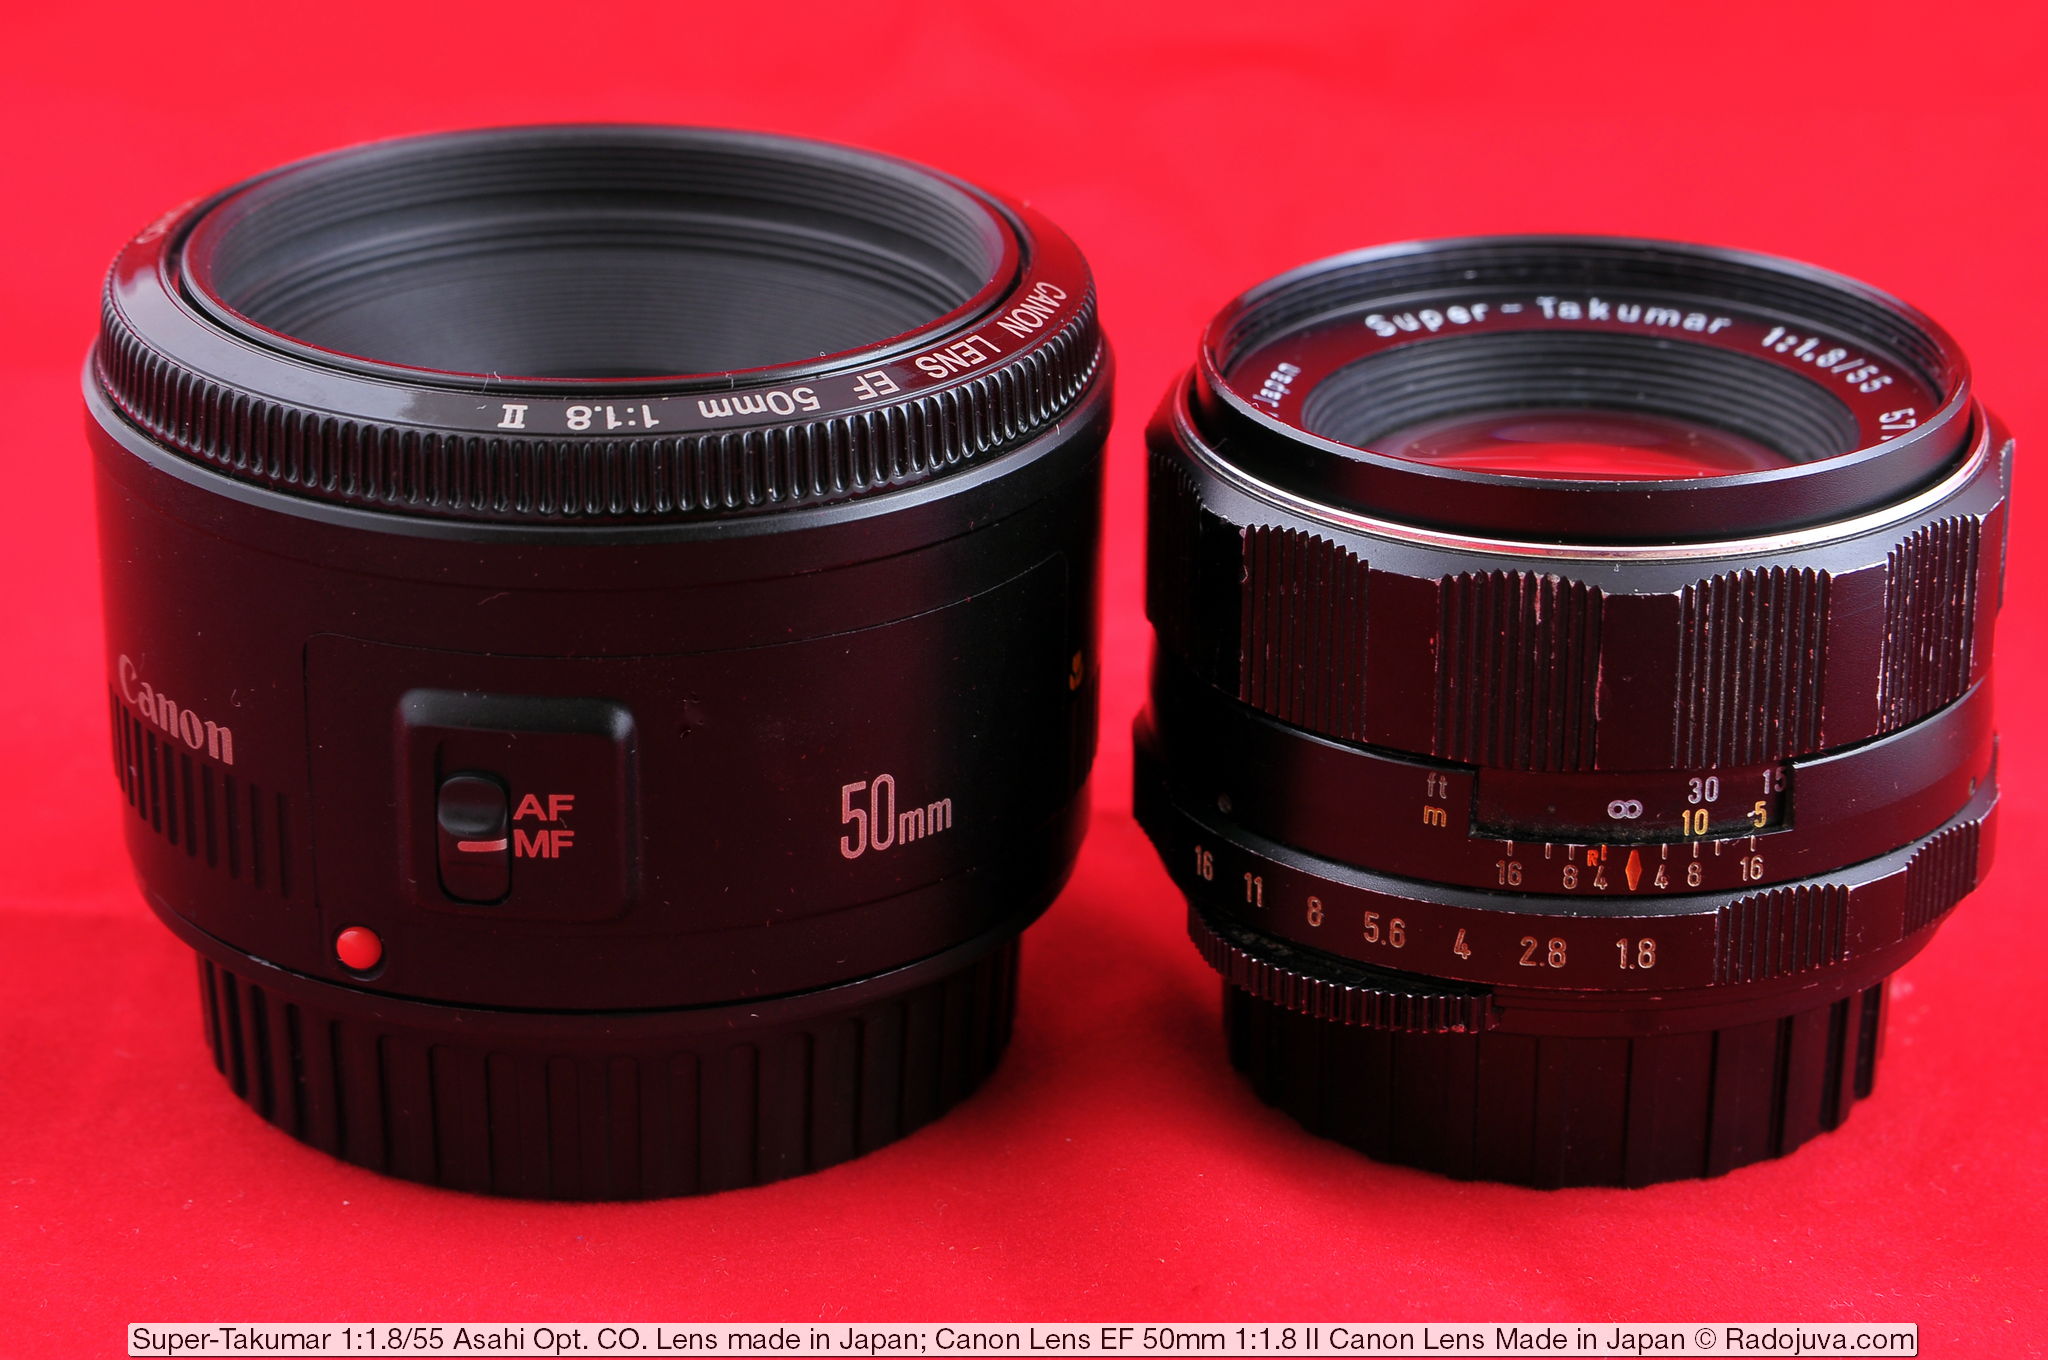 Super-Takumar 1: 1.8 / 55 Asahi Opt Lenses. Co. Lens made in Japan and Canon Lens EF 50mm 1: 1.8 II Canon Lens Made in Japan